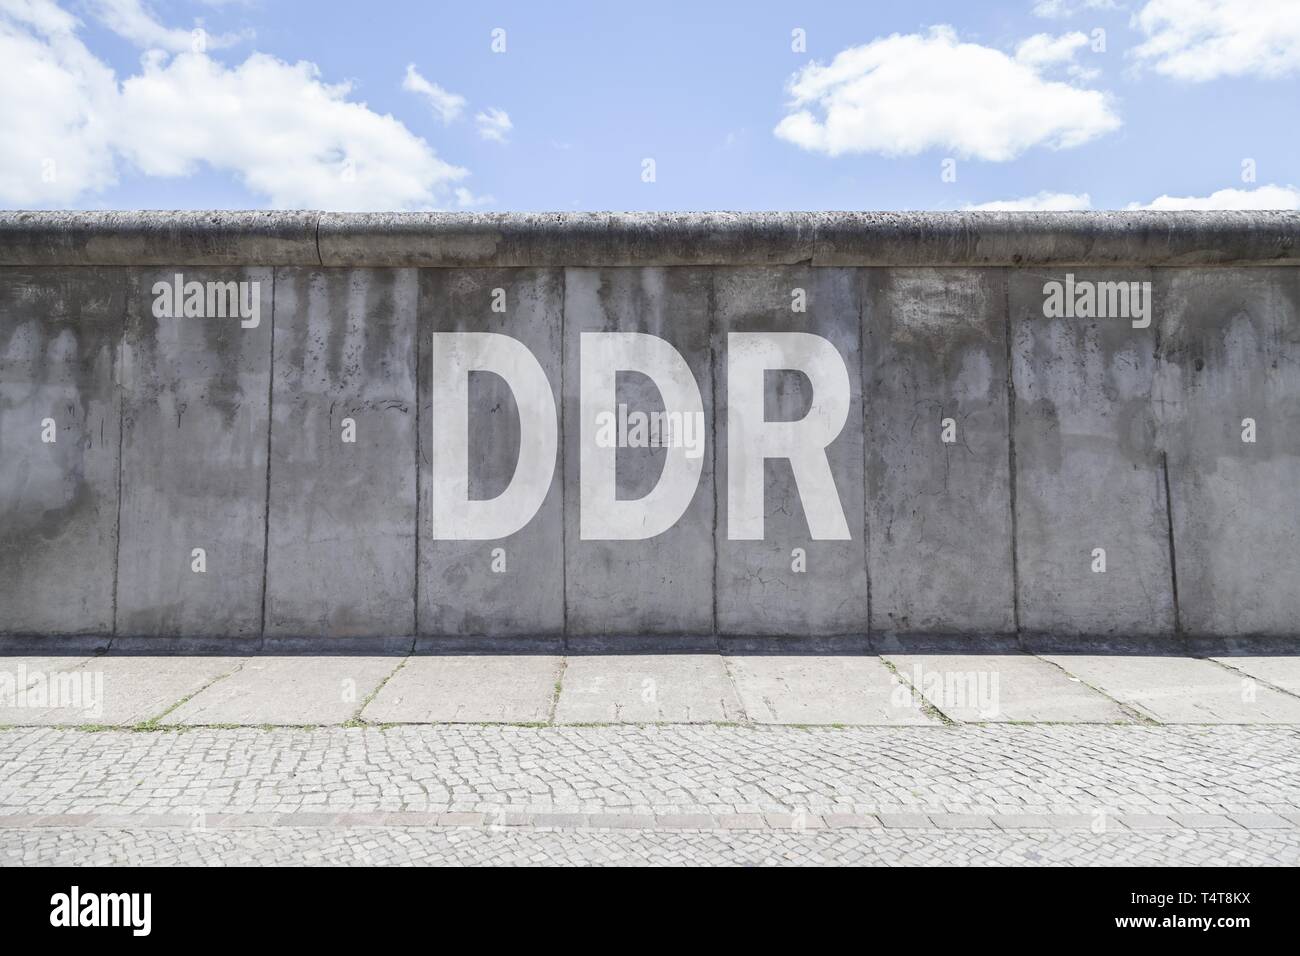 El muro de Berlín con las letras "dr", Bernauer Straße, Berlín, Alemania, Europa, **** fotomontaje Foto de stock